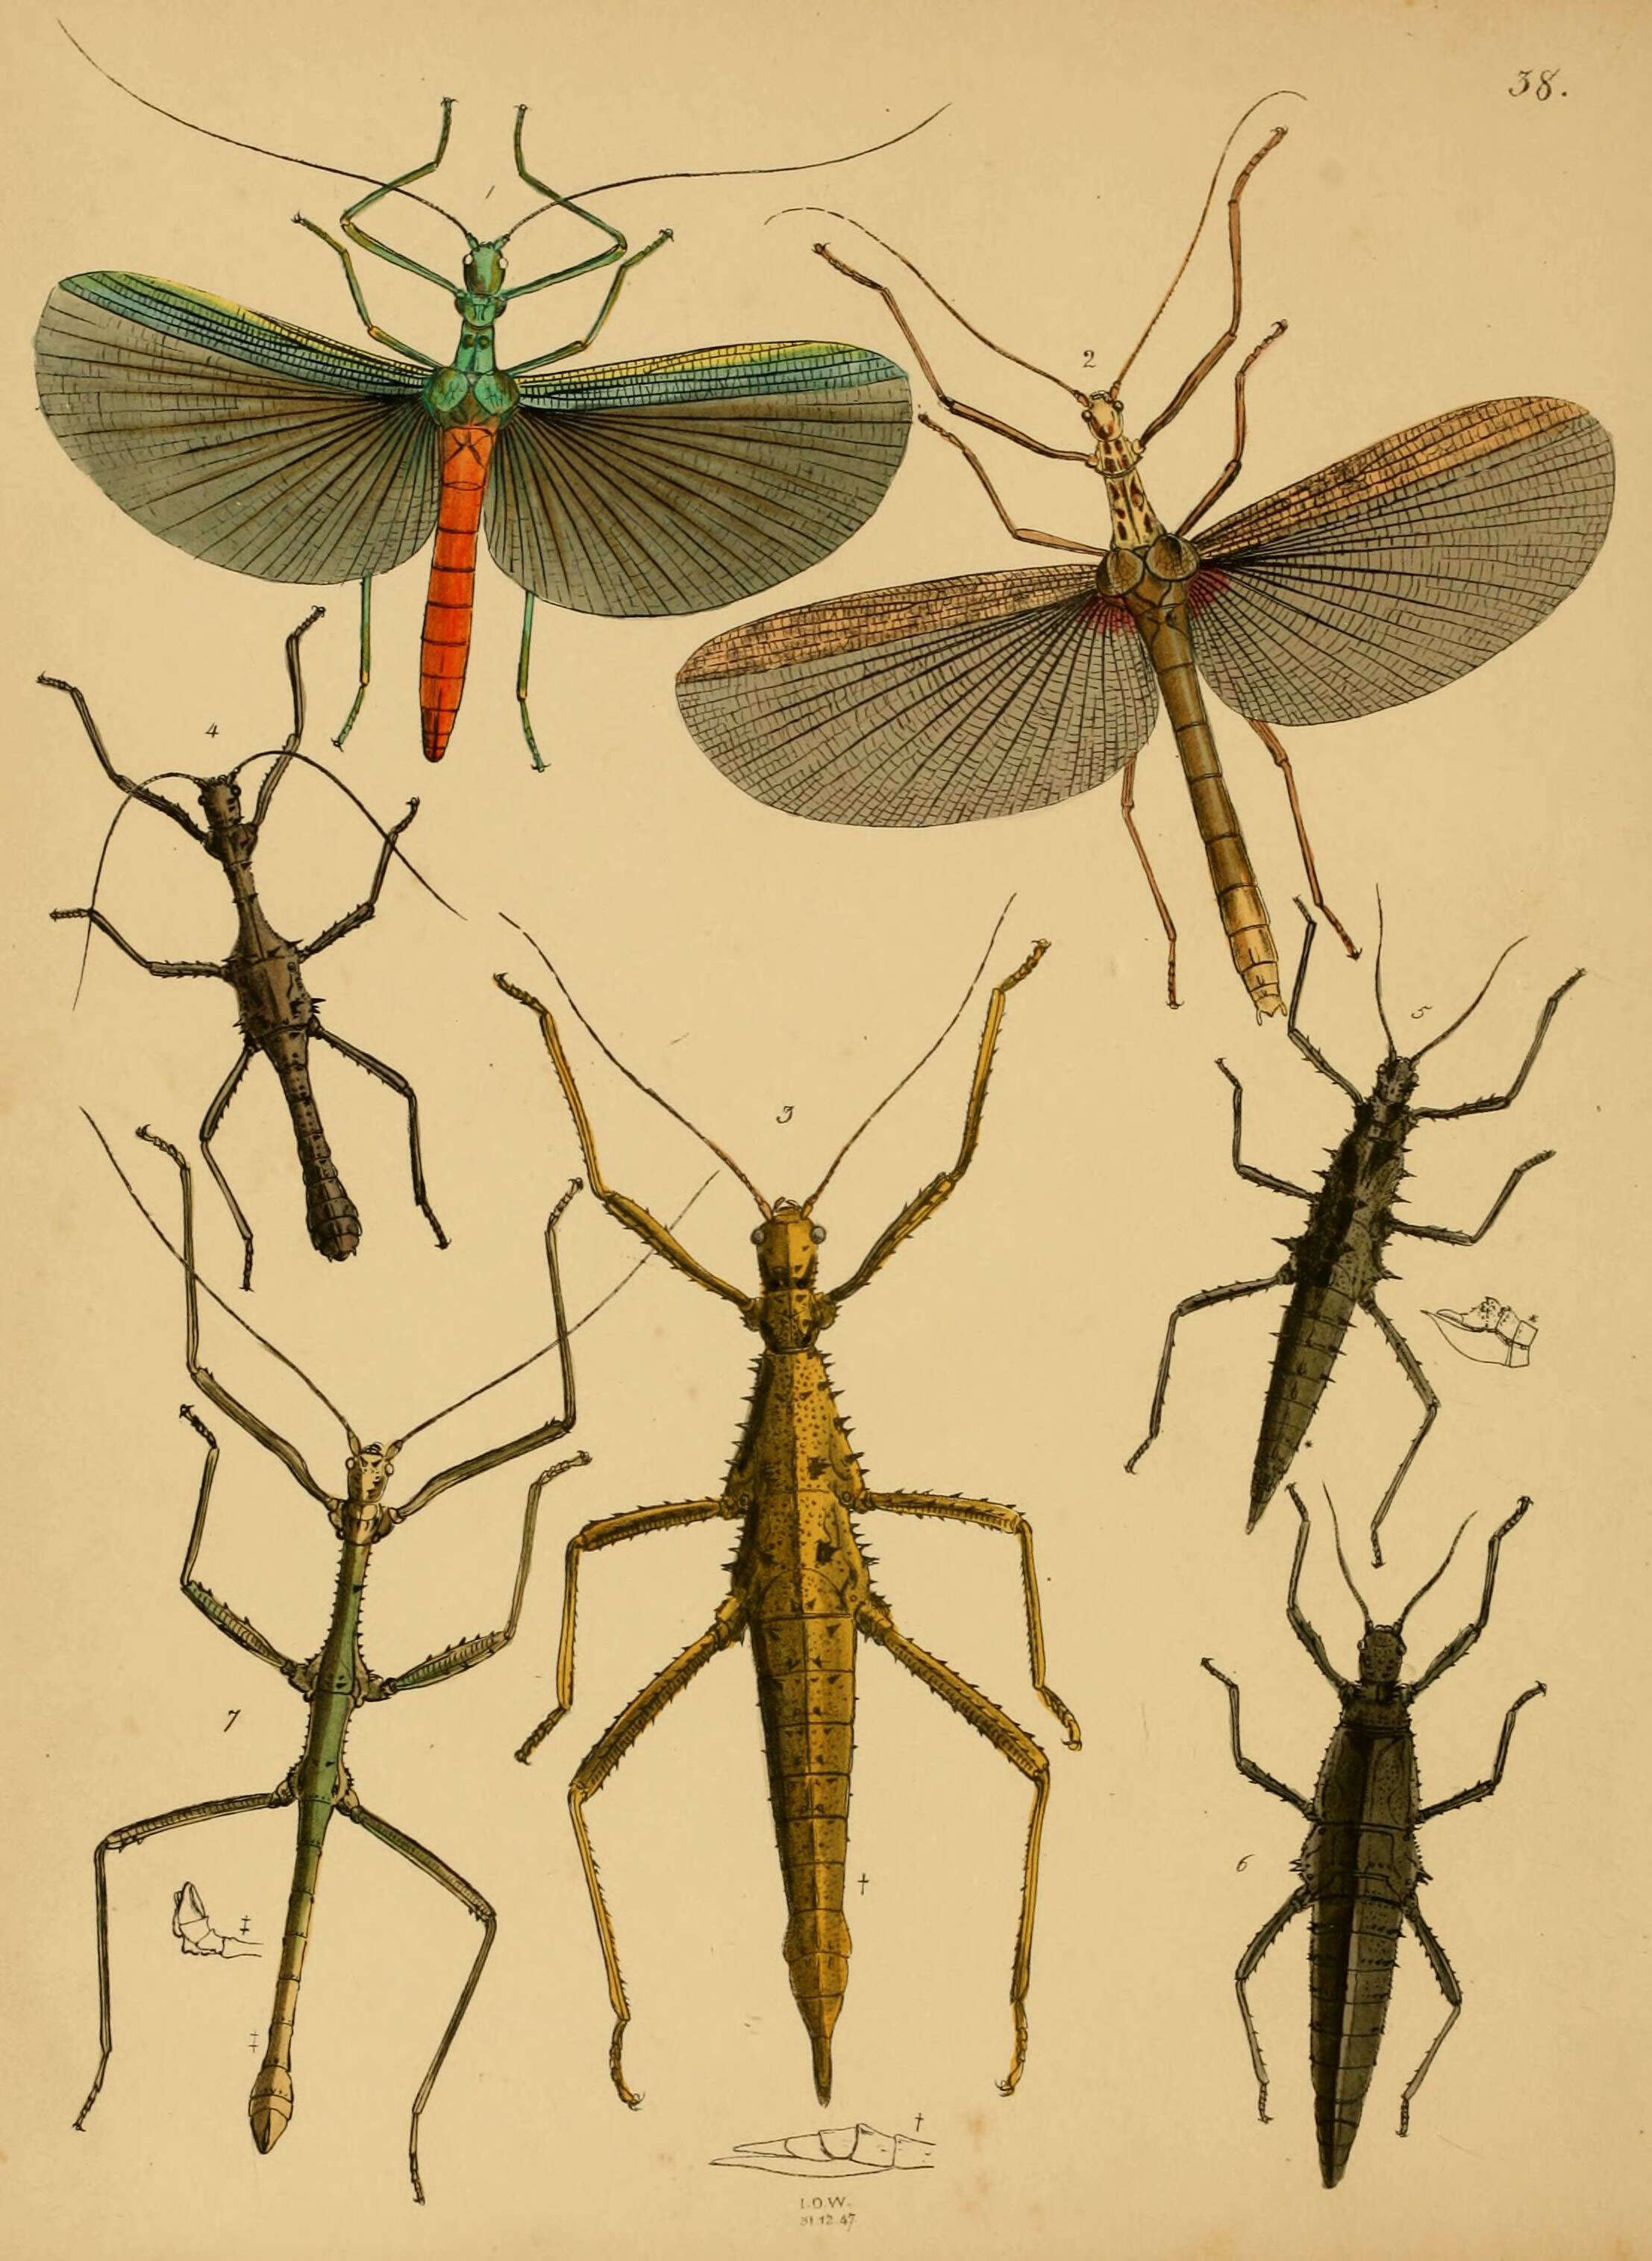 Image of Tisamenus draconina (Westwood 1848)